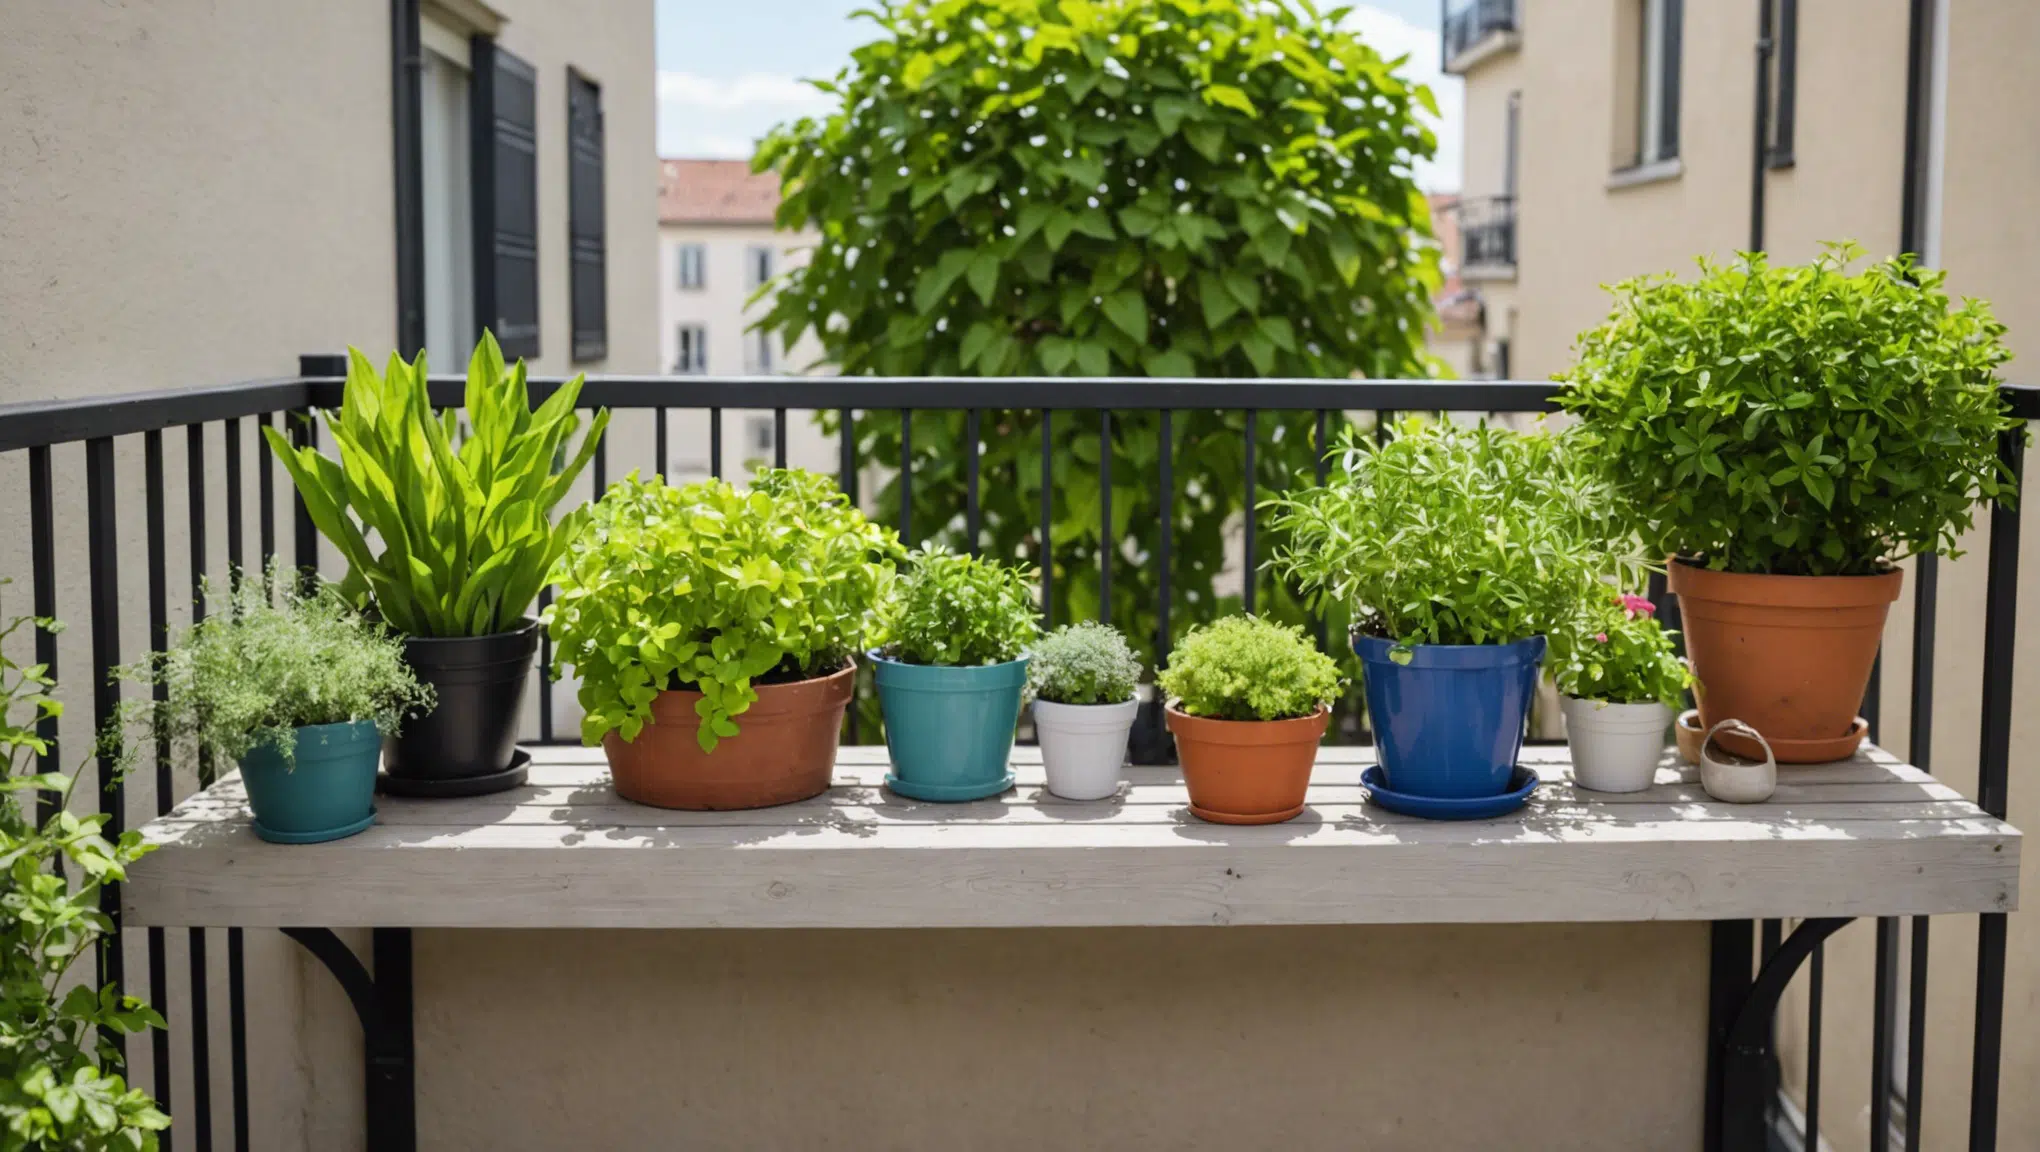 découvrez comment faire de votre balcon un véritable oasis de verdure grâce à ces astuces de jardinage urbain ! transformez votre espace extérieur en un coin de nature relaxant et ressourçant.